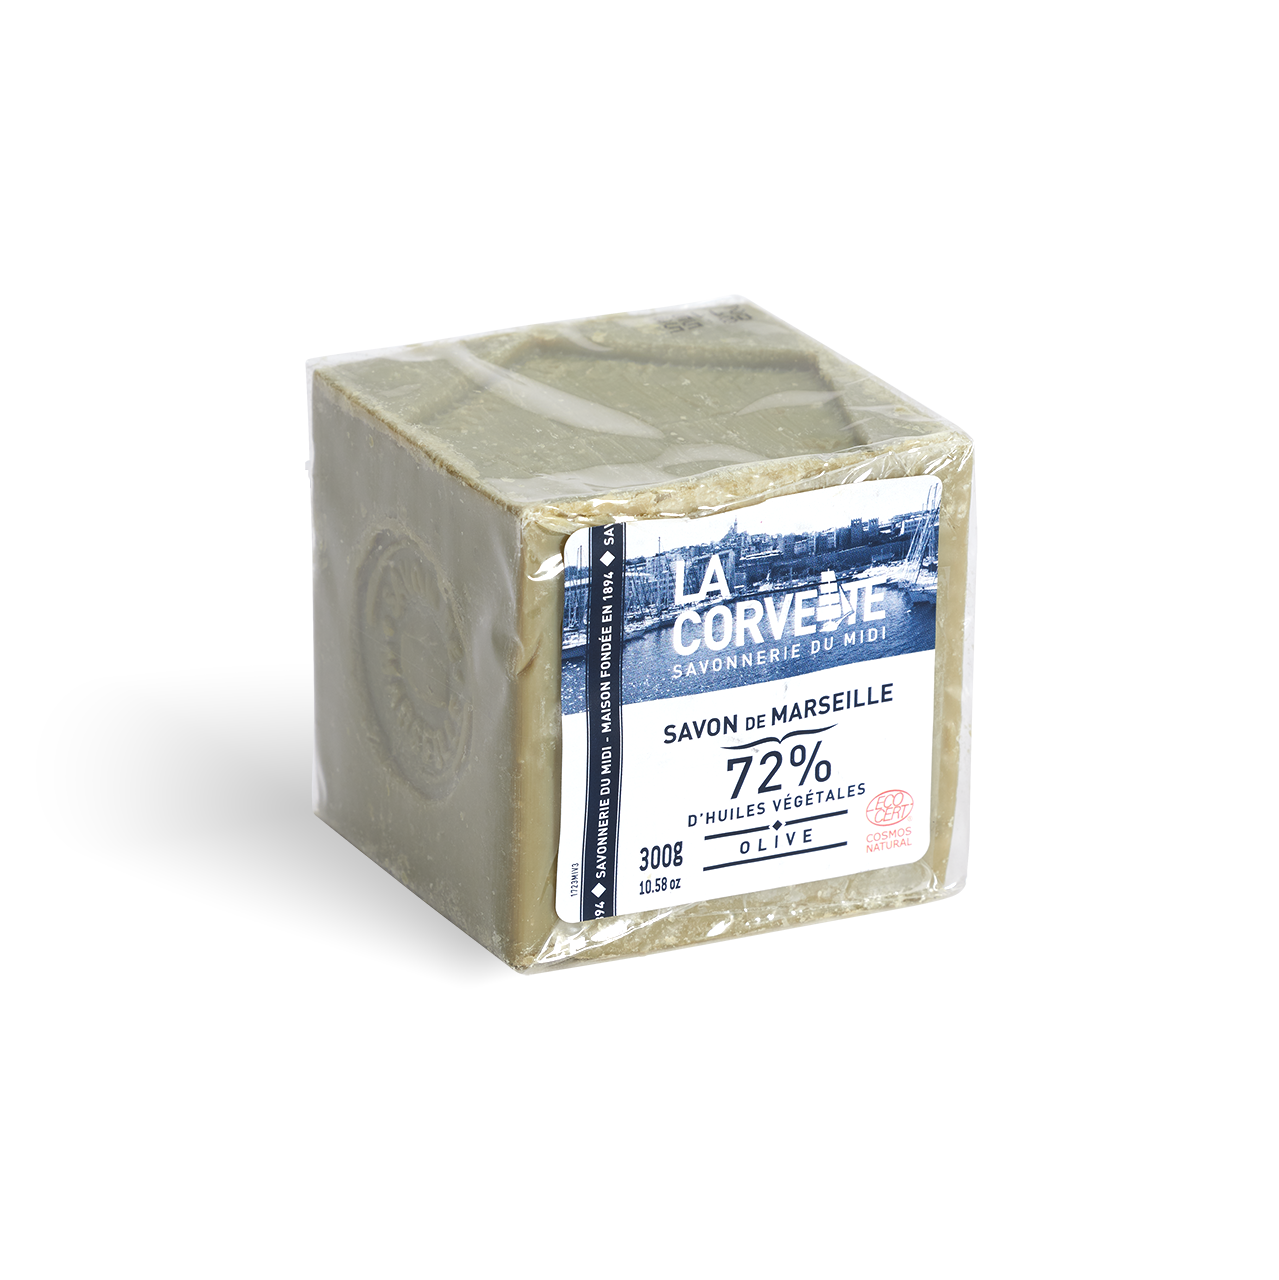 Традиционное марсельское гипоаллергенное оливковое мыло. Куб, 300 гр.